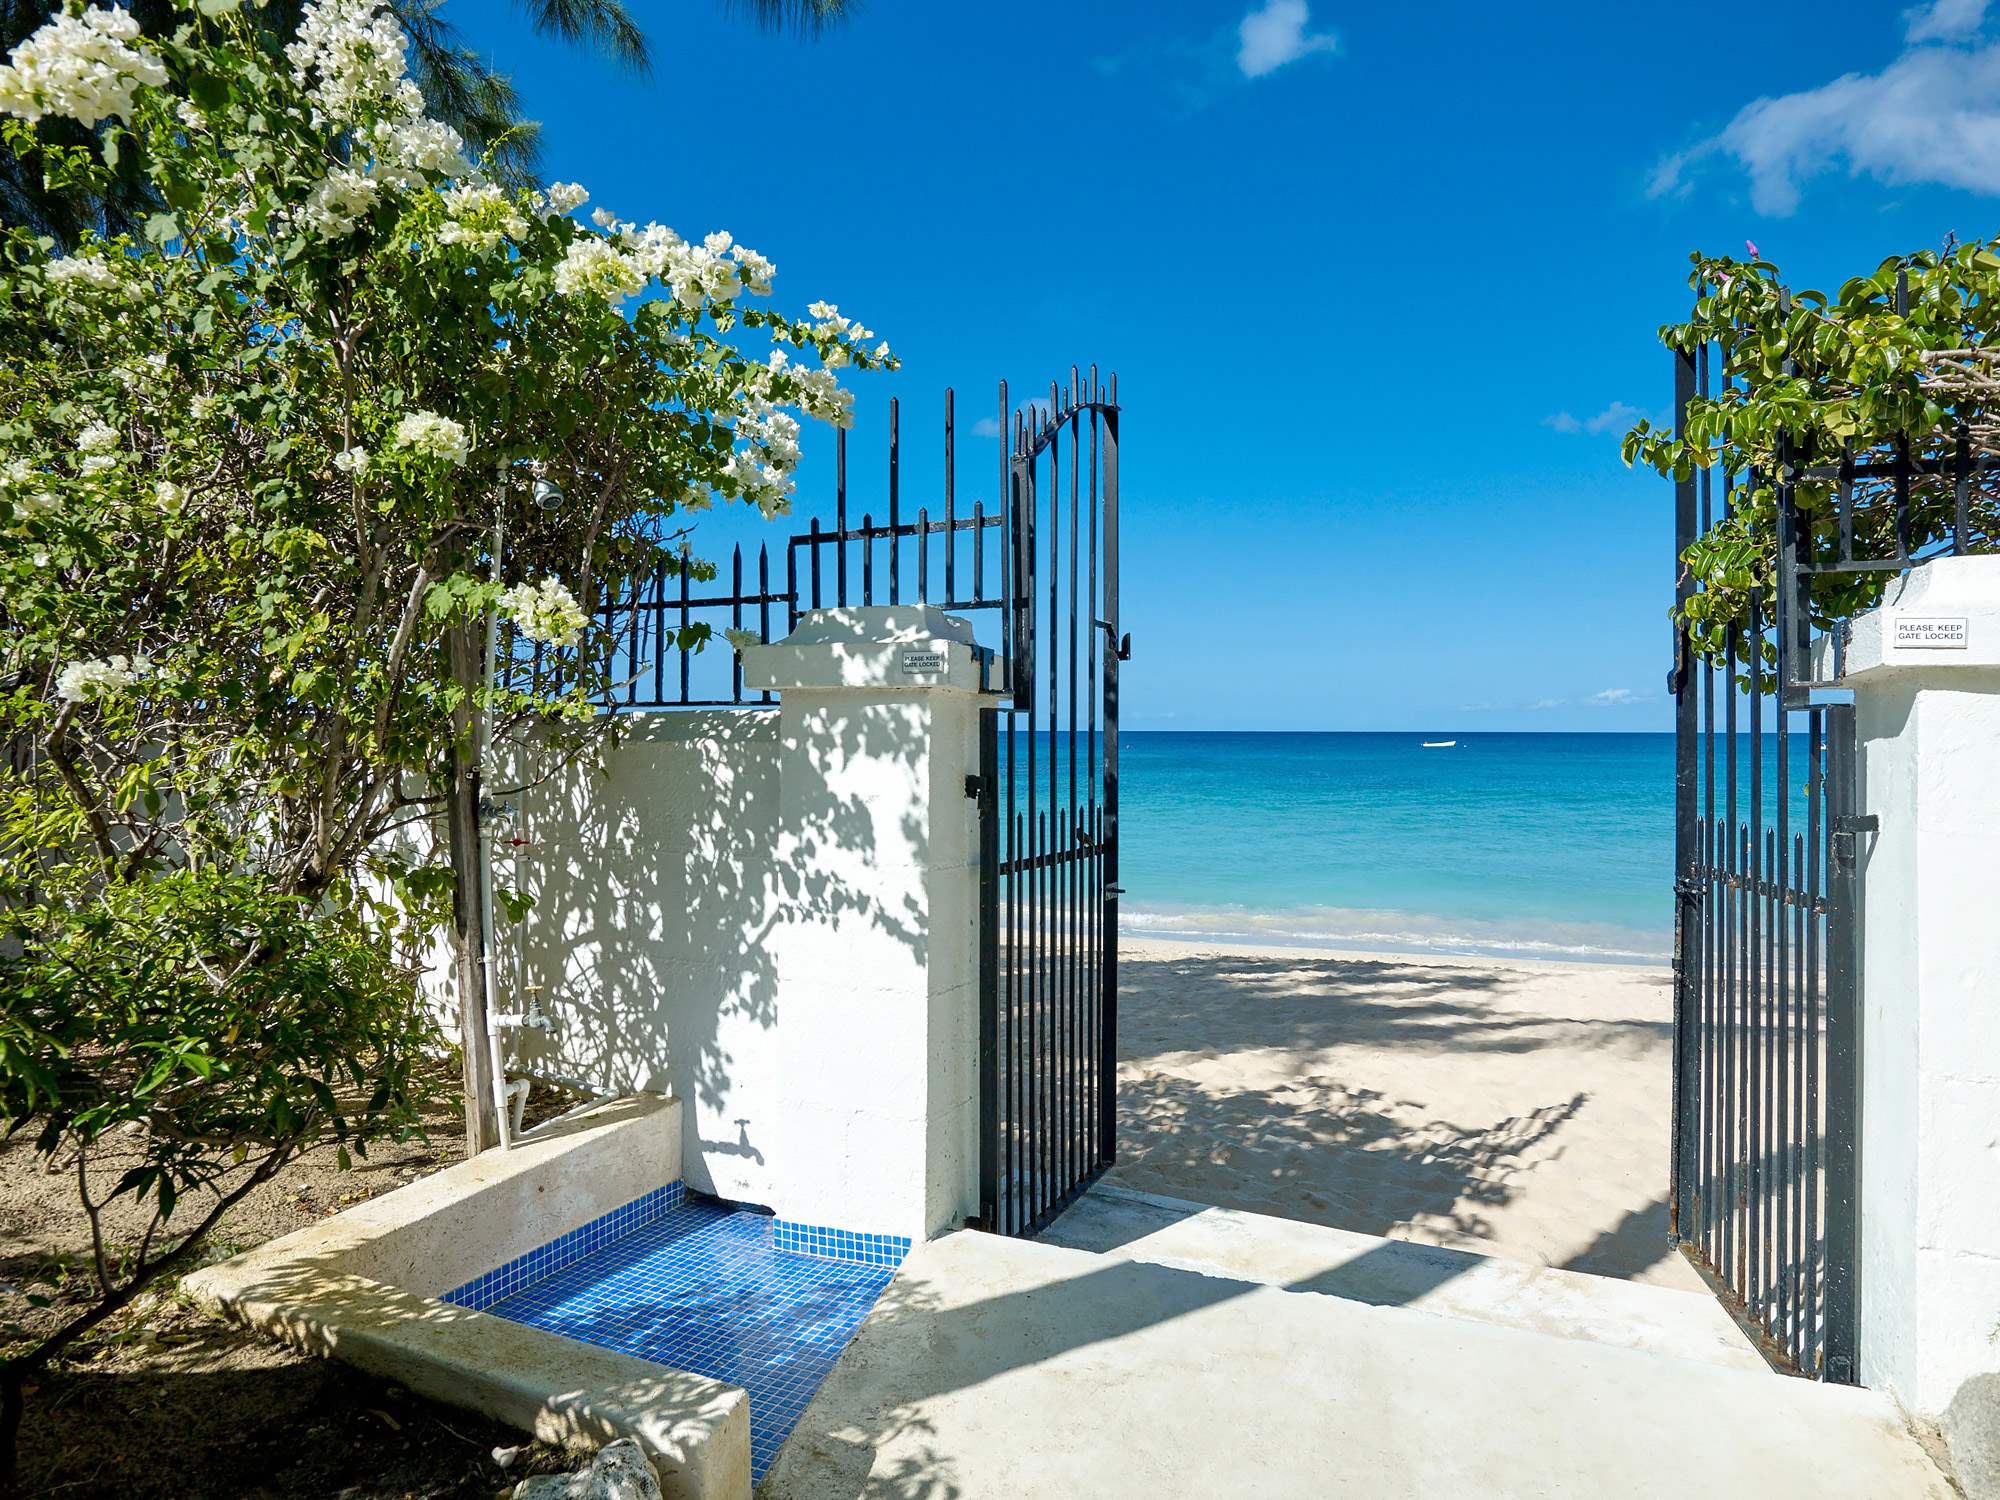 New Mansion, 4 bedroom villa in St. James & West Coast, Barbados Photo #3